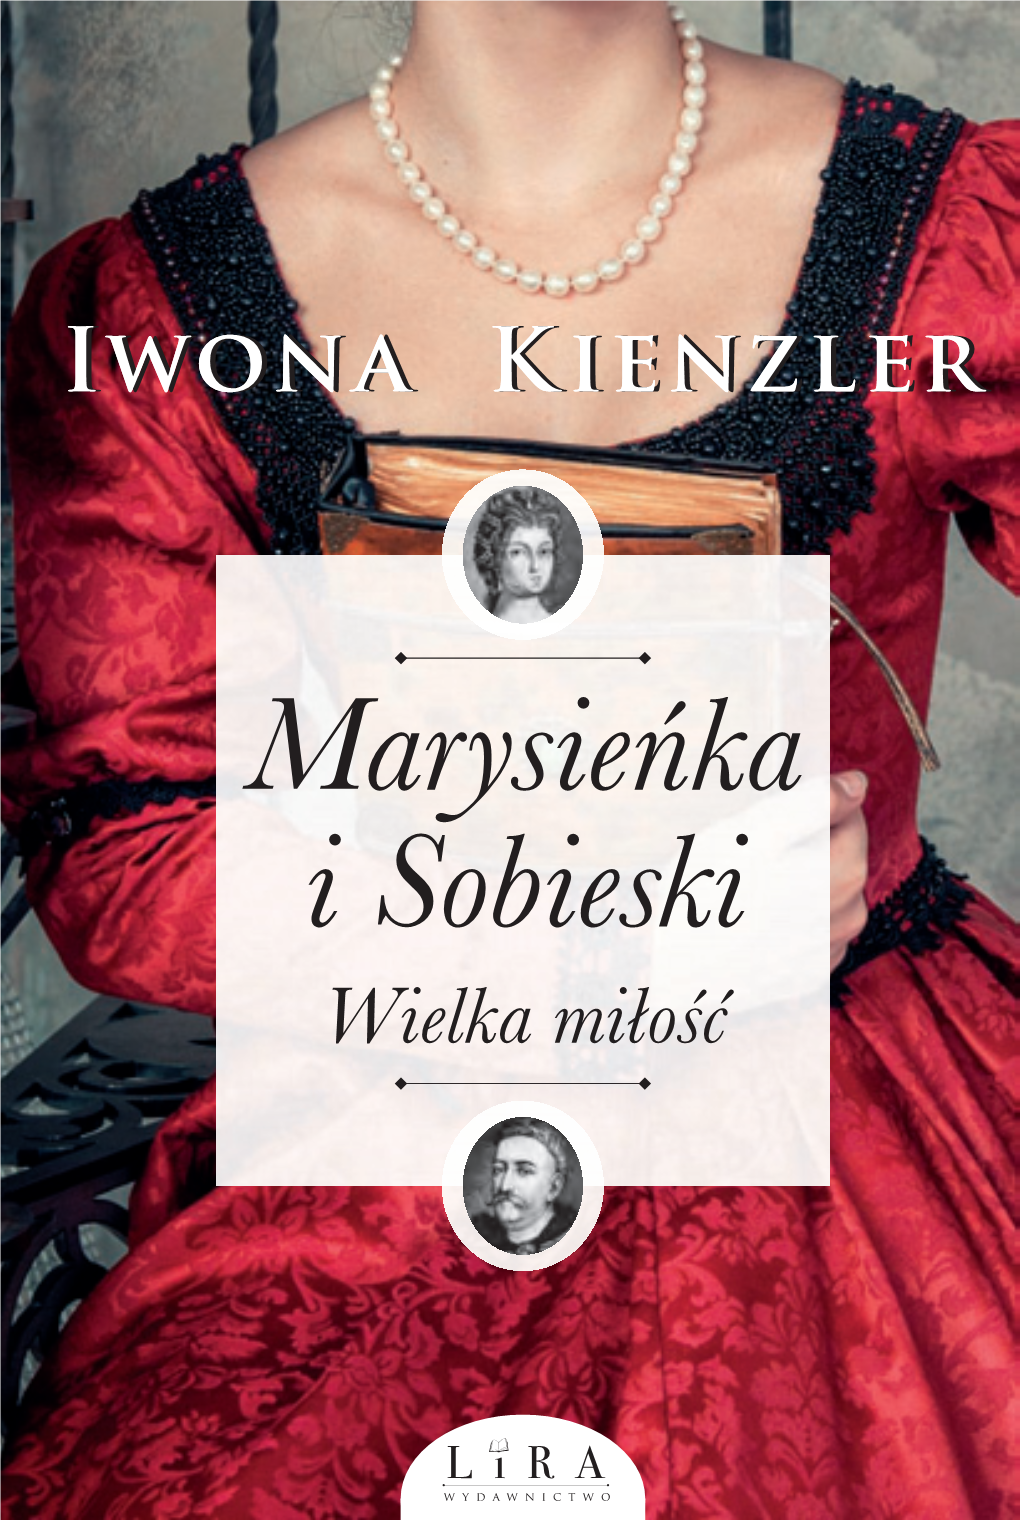 Marysieńka I Sobieski. Wielka Miłość” Jest Kolejnym ISBN: 978-83-65838-05-6 Tytułem Cyklu